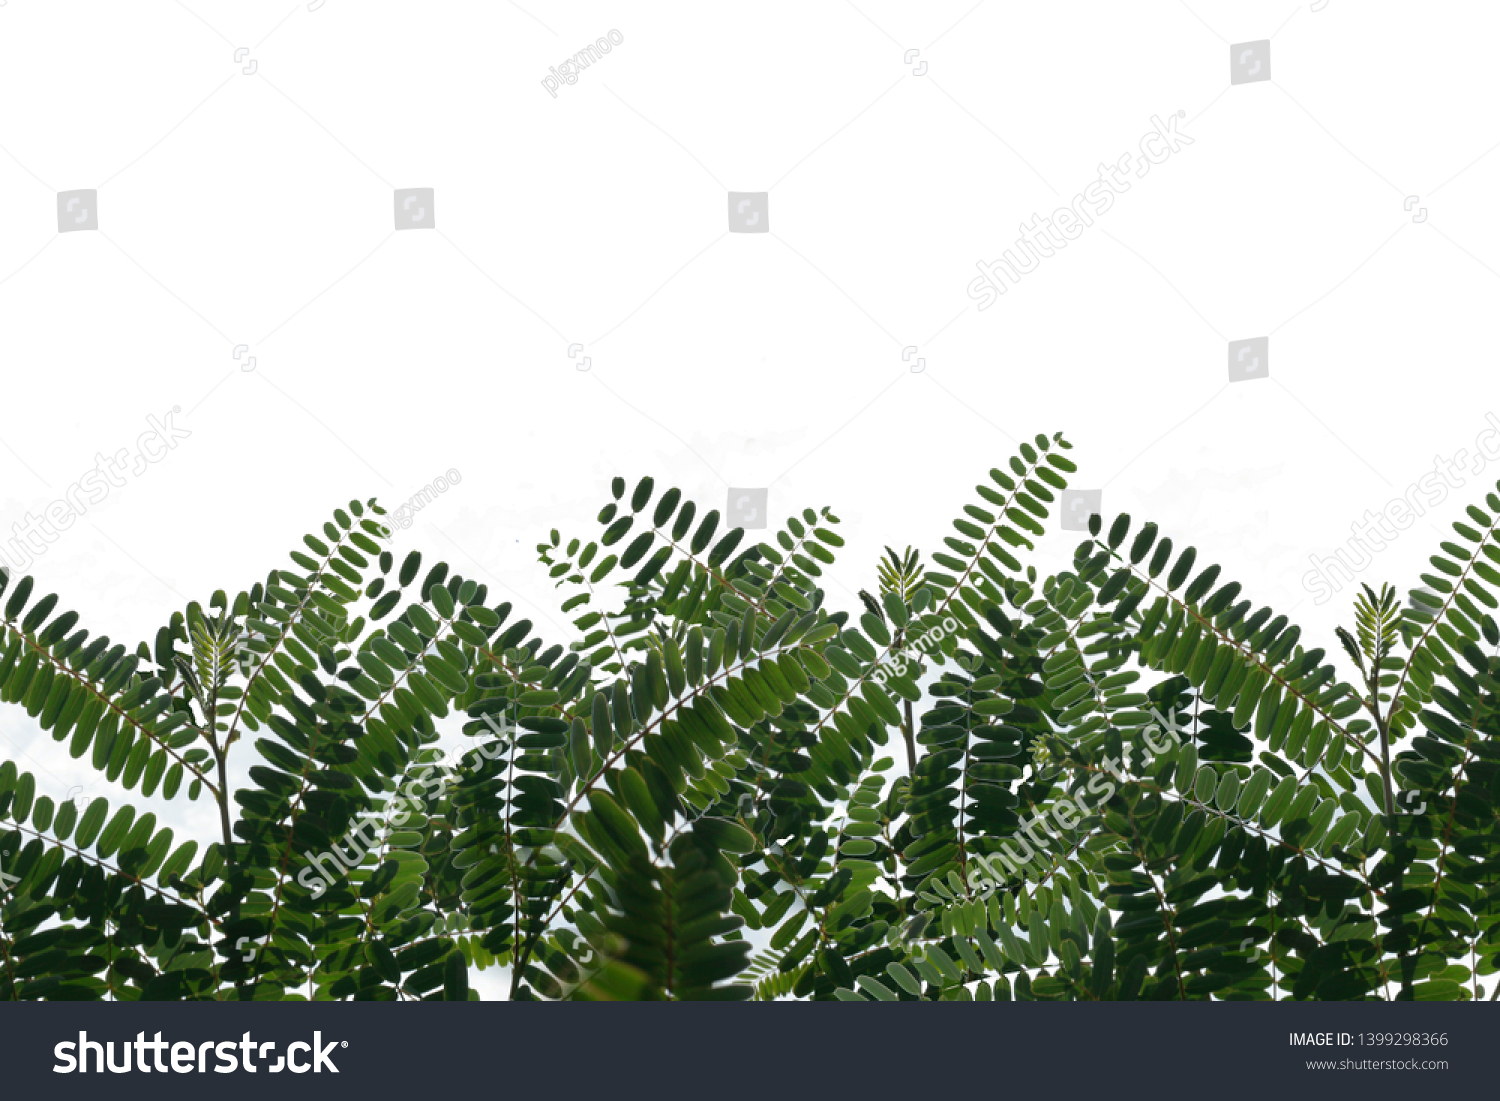 White foliage background and foliage #1399298366